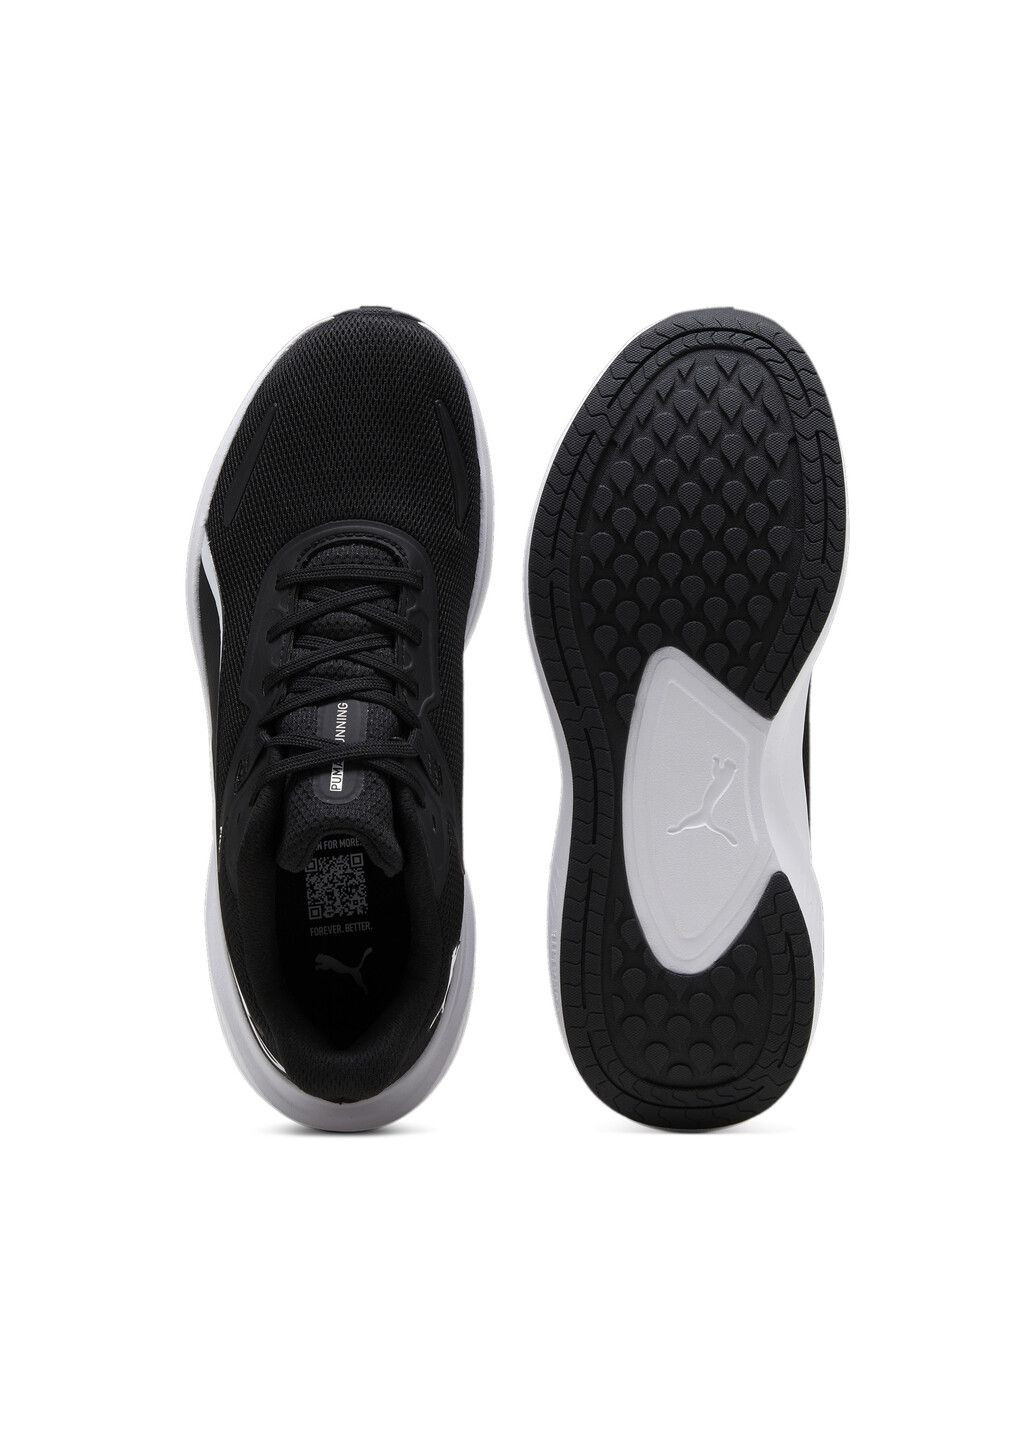 Черные всесезонные кроссовки skyrocket lite running shoes Puma